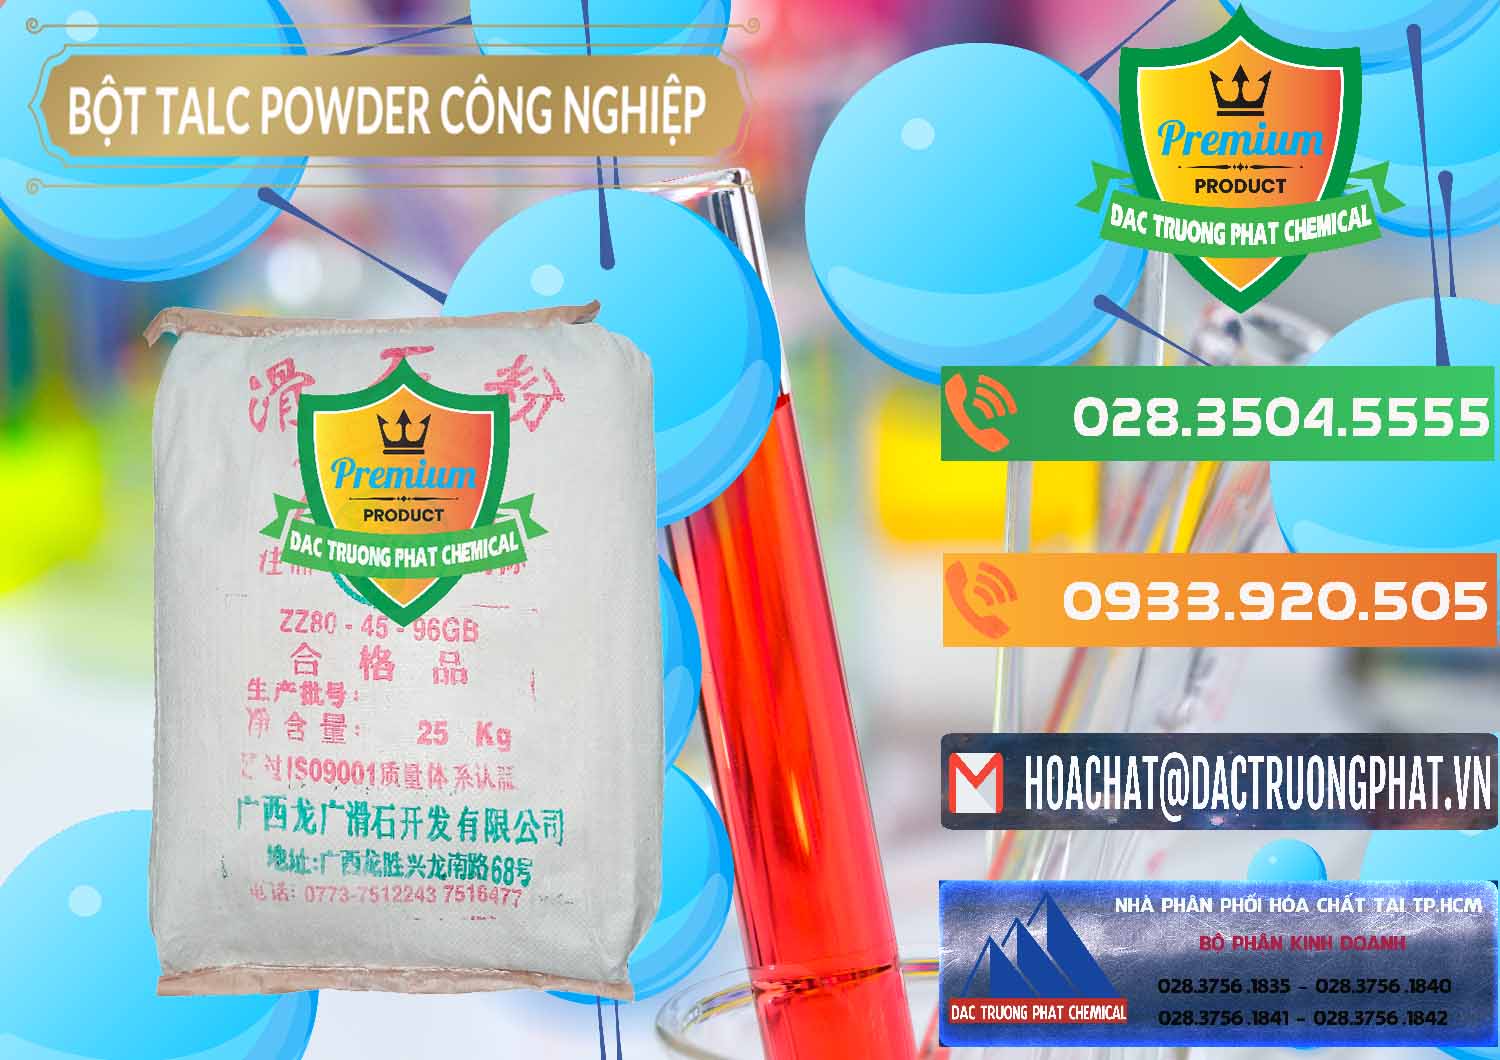 Nơi chuyên bán và cung ứng Bột Talc Powder Công Nghiệp Trung Quốc China - 0037 - Công ty kinh doanh & phân phối hóa chất tại TP.HCM - hoachatxulynuoc.com.vn